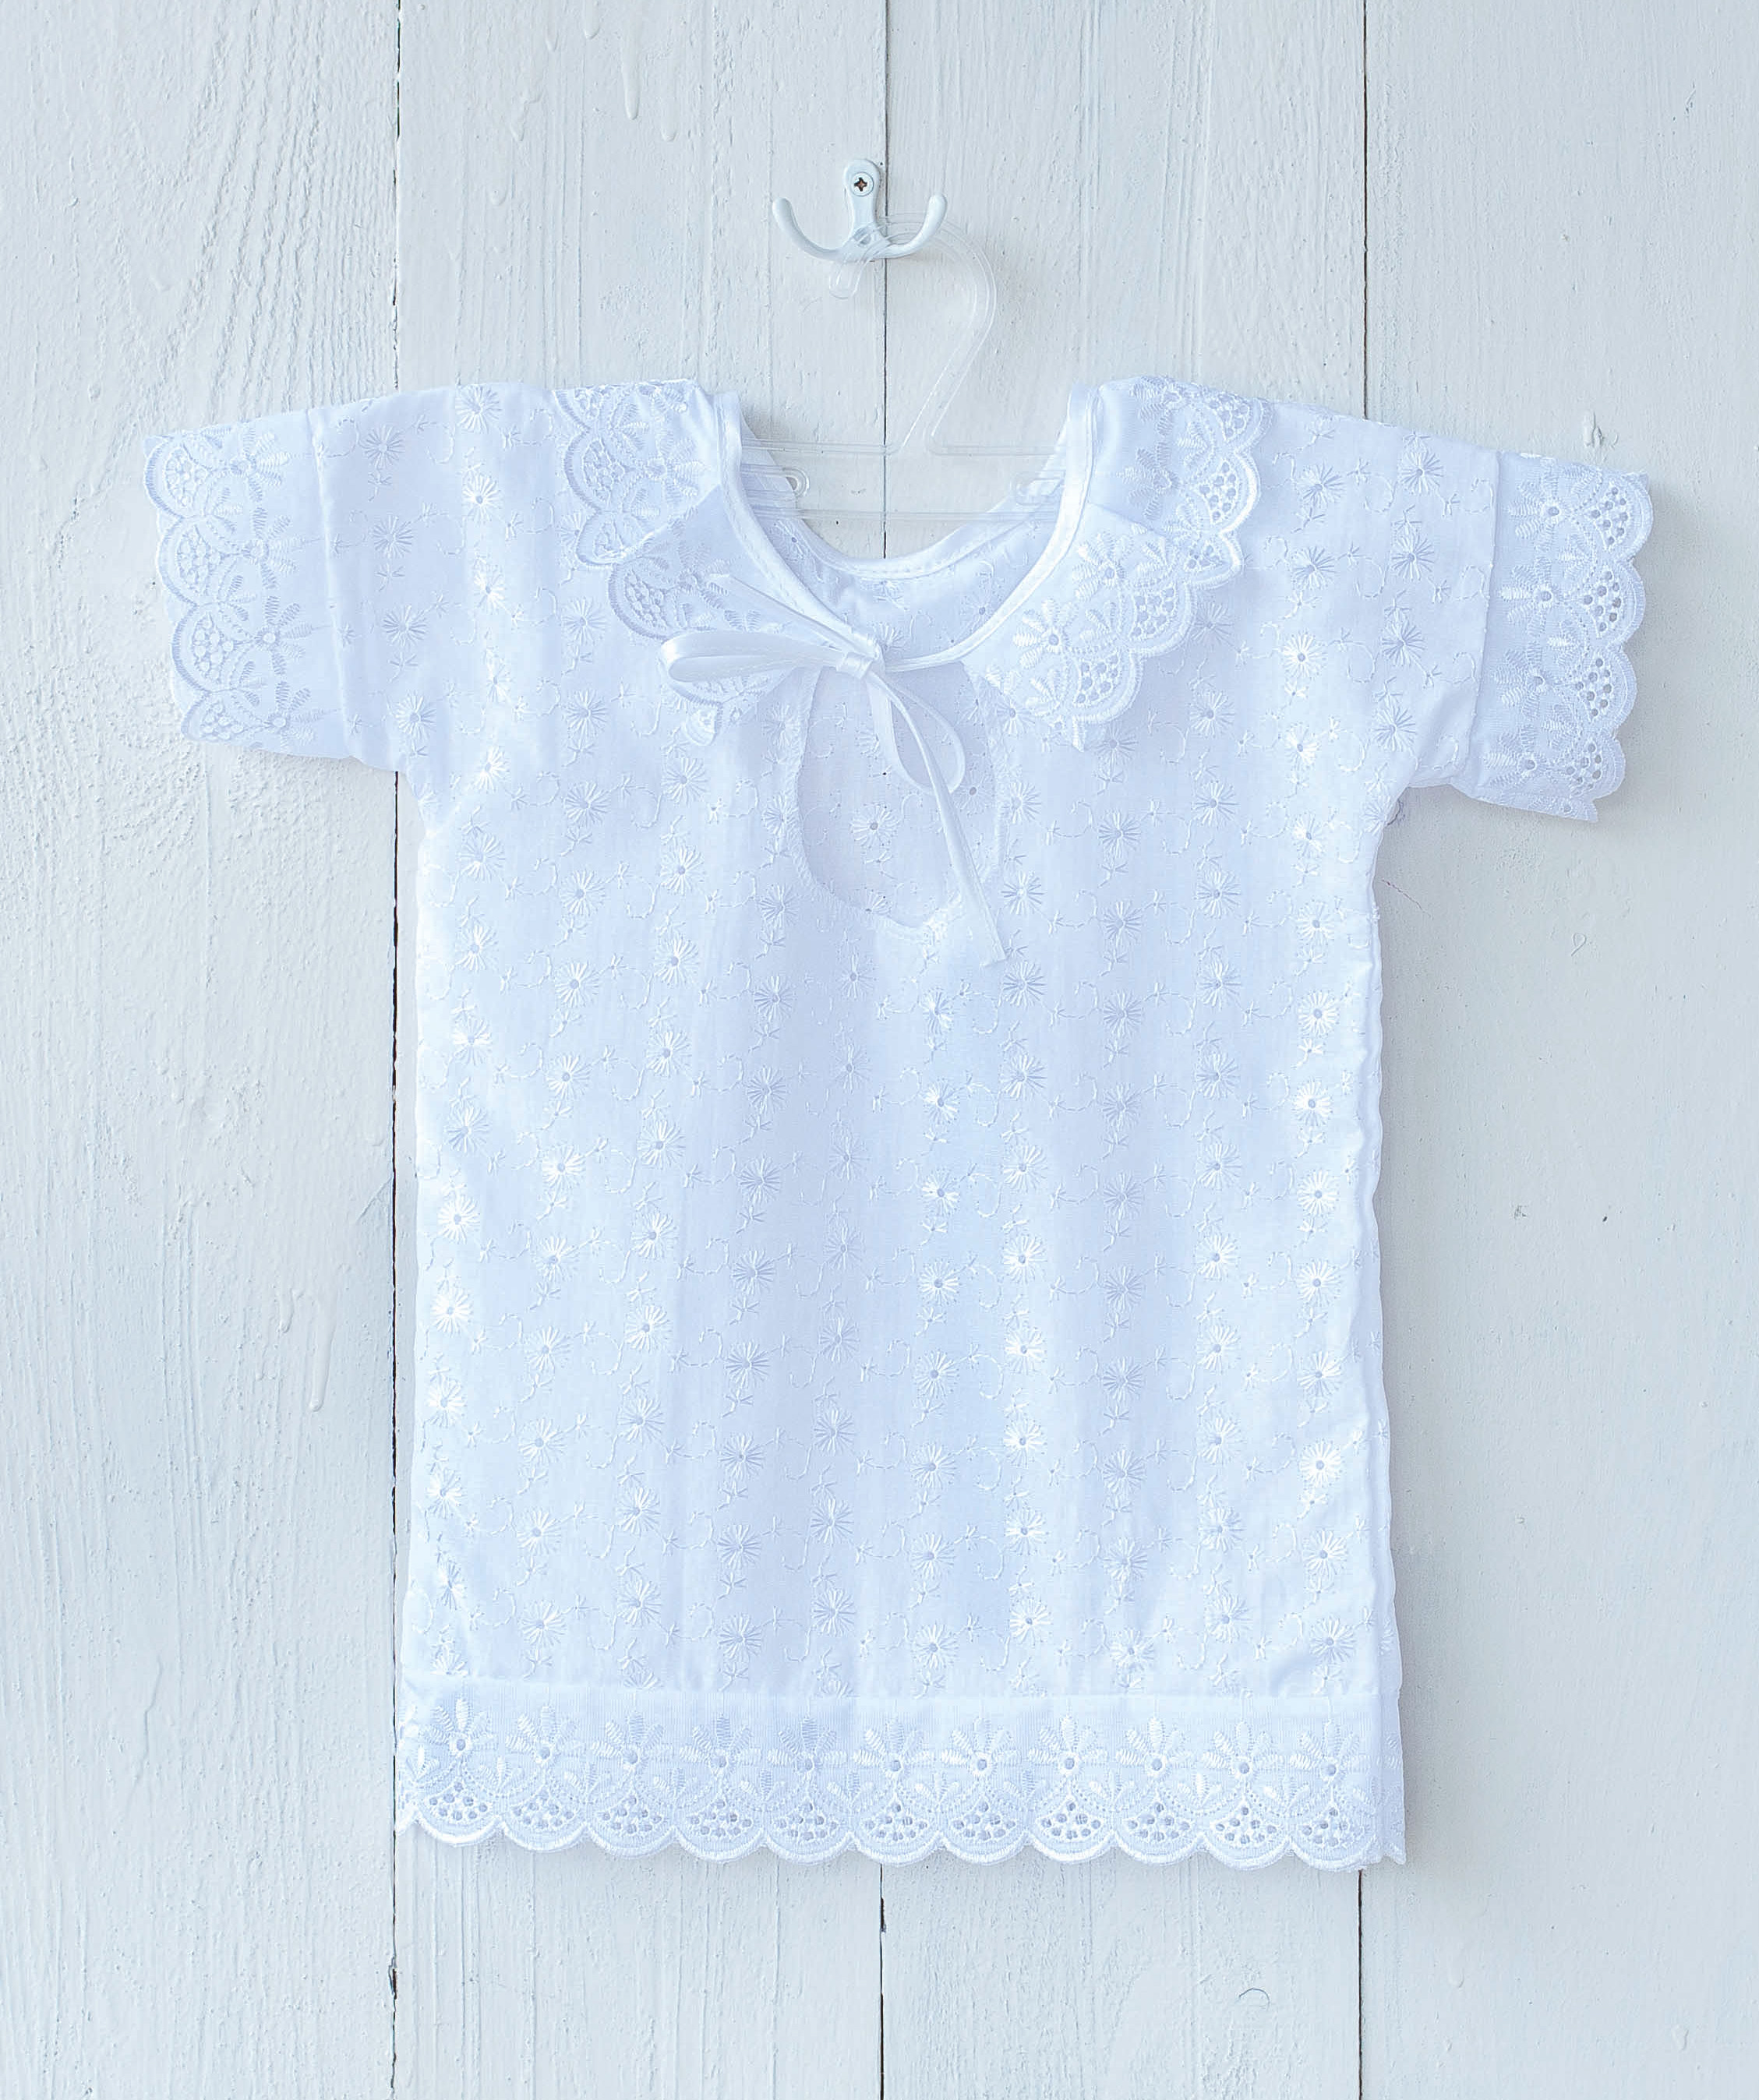 Г223-74 Крестильная рубашечка р,74 Вышитое полотно - 100% хлопок,Унисекс рубашечка для малышей от 1 года до 2-х л